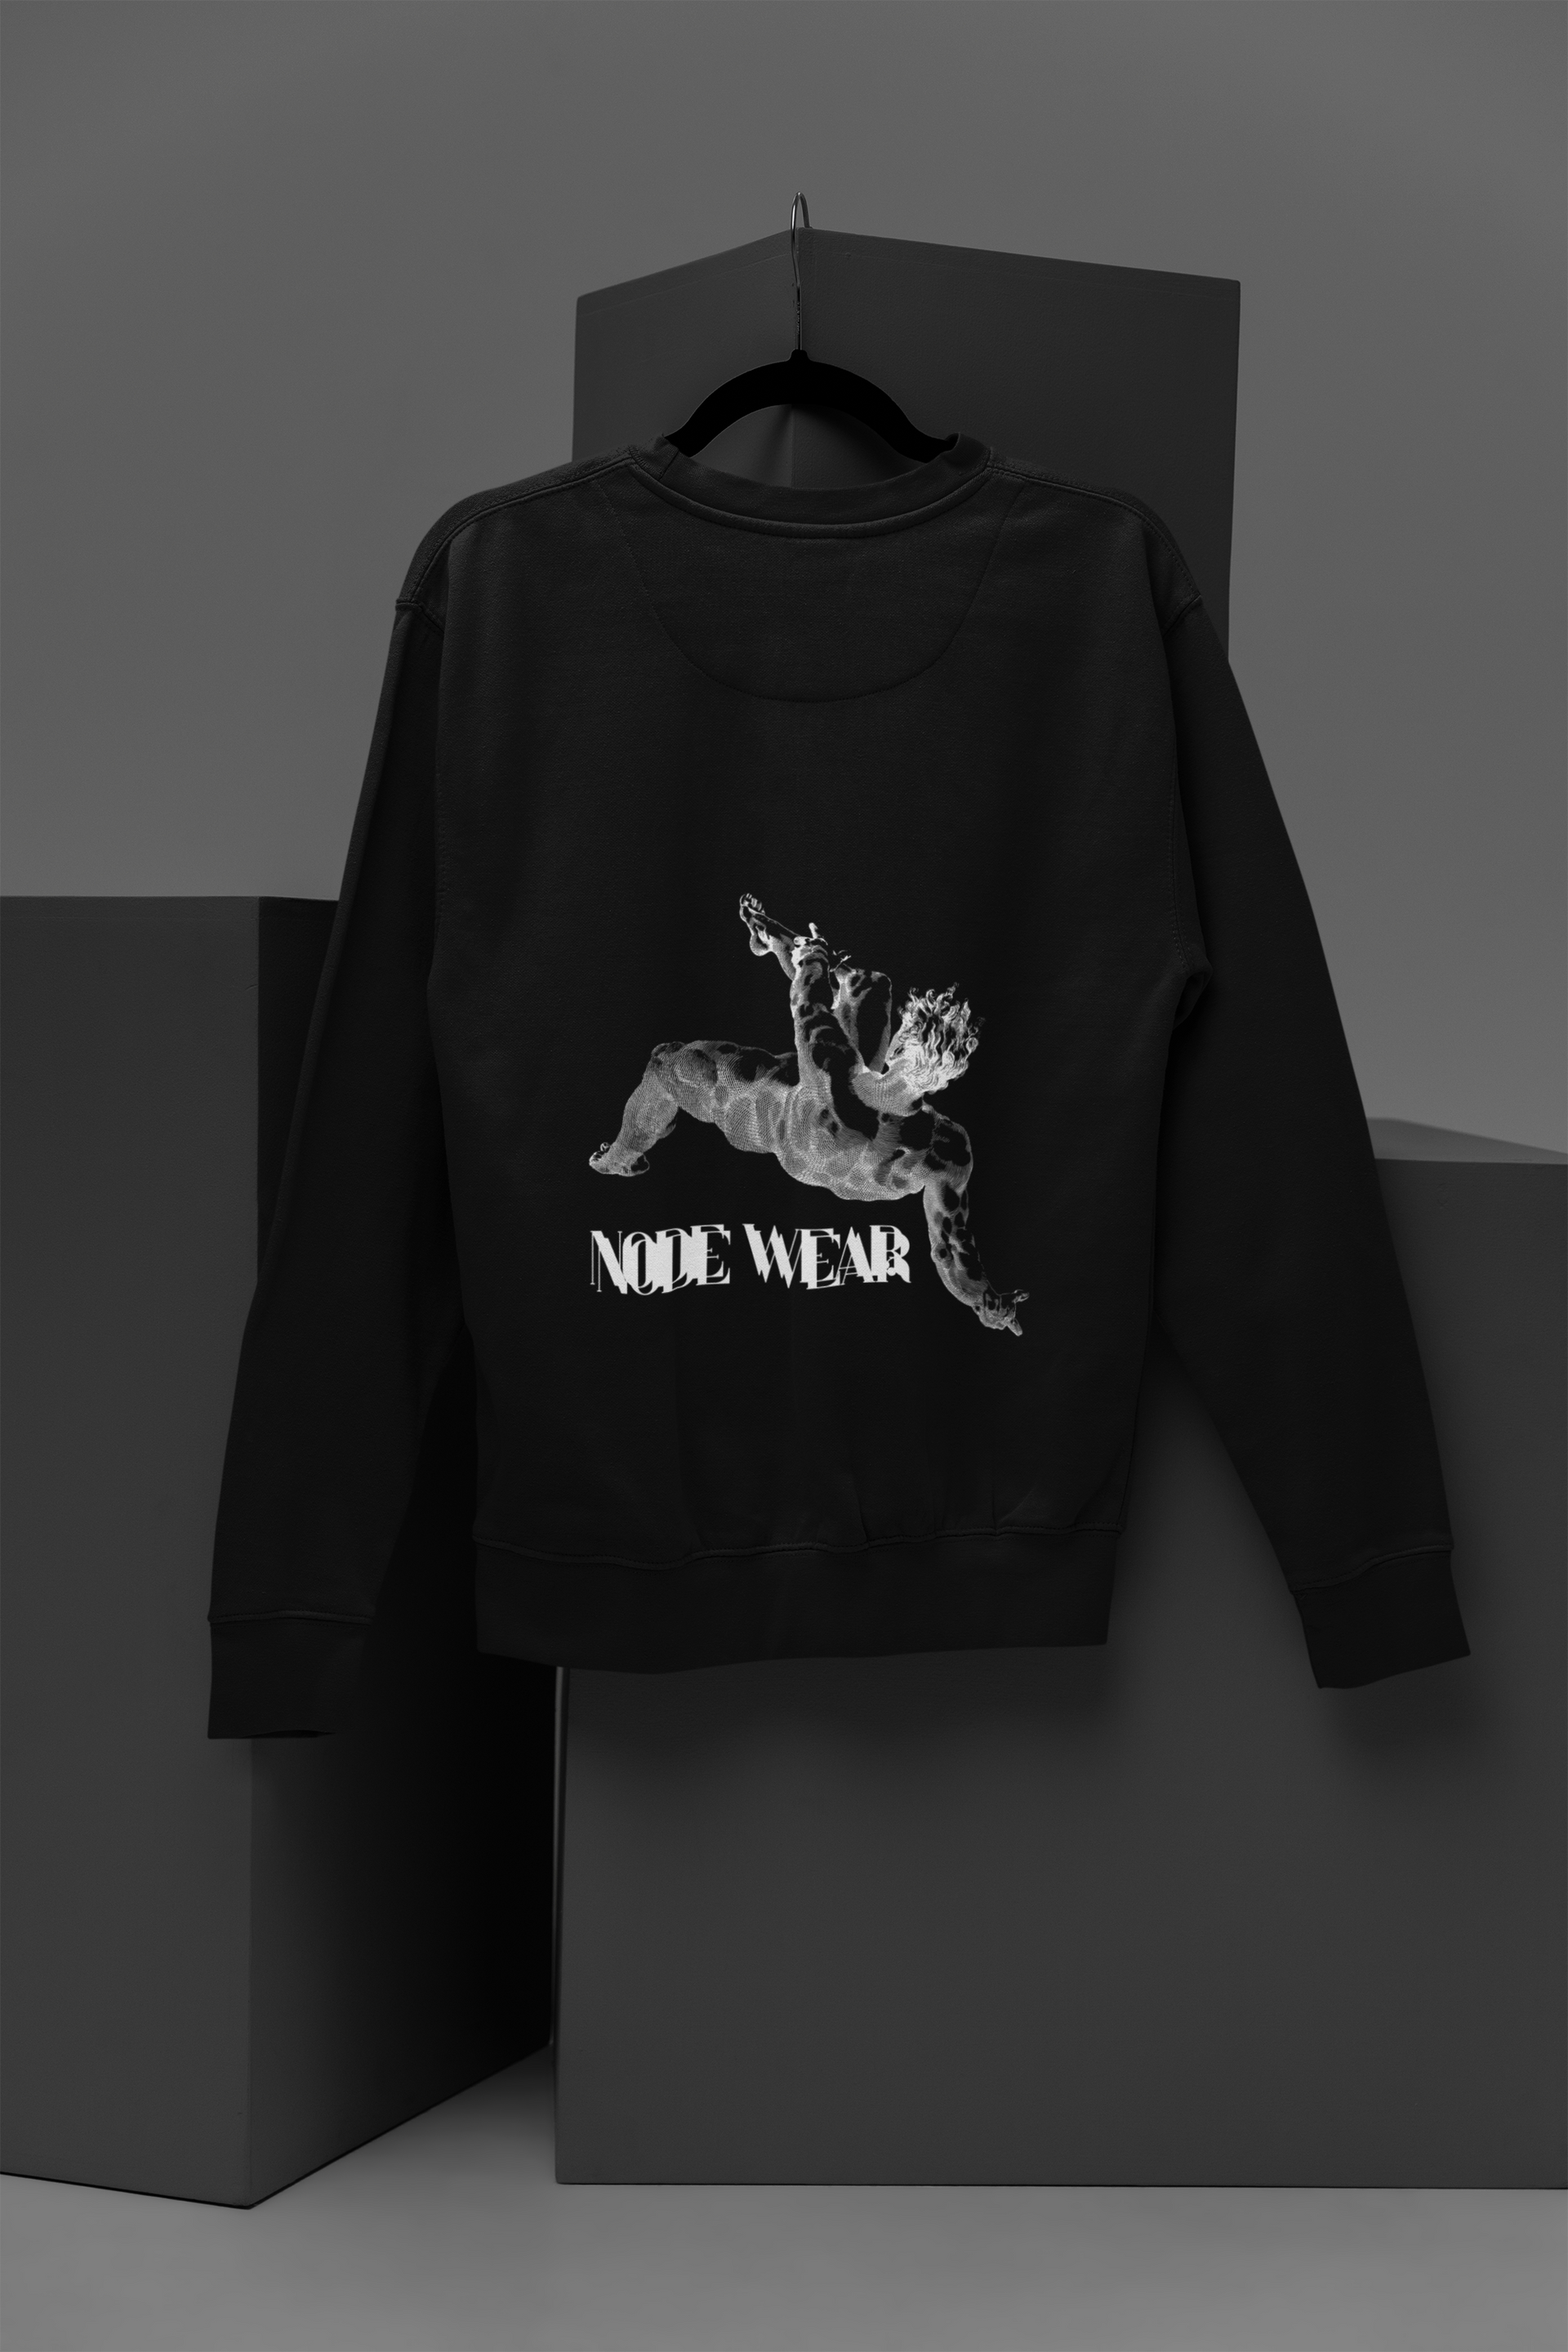 Sky fall Sweatshirt | NodeWear Premium Wear